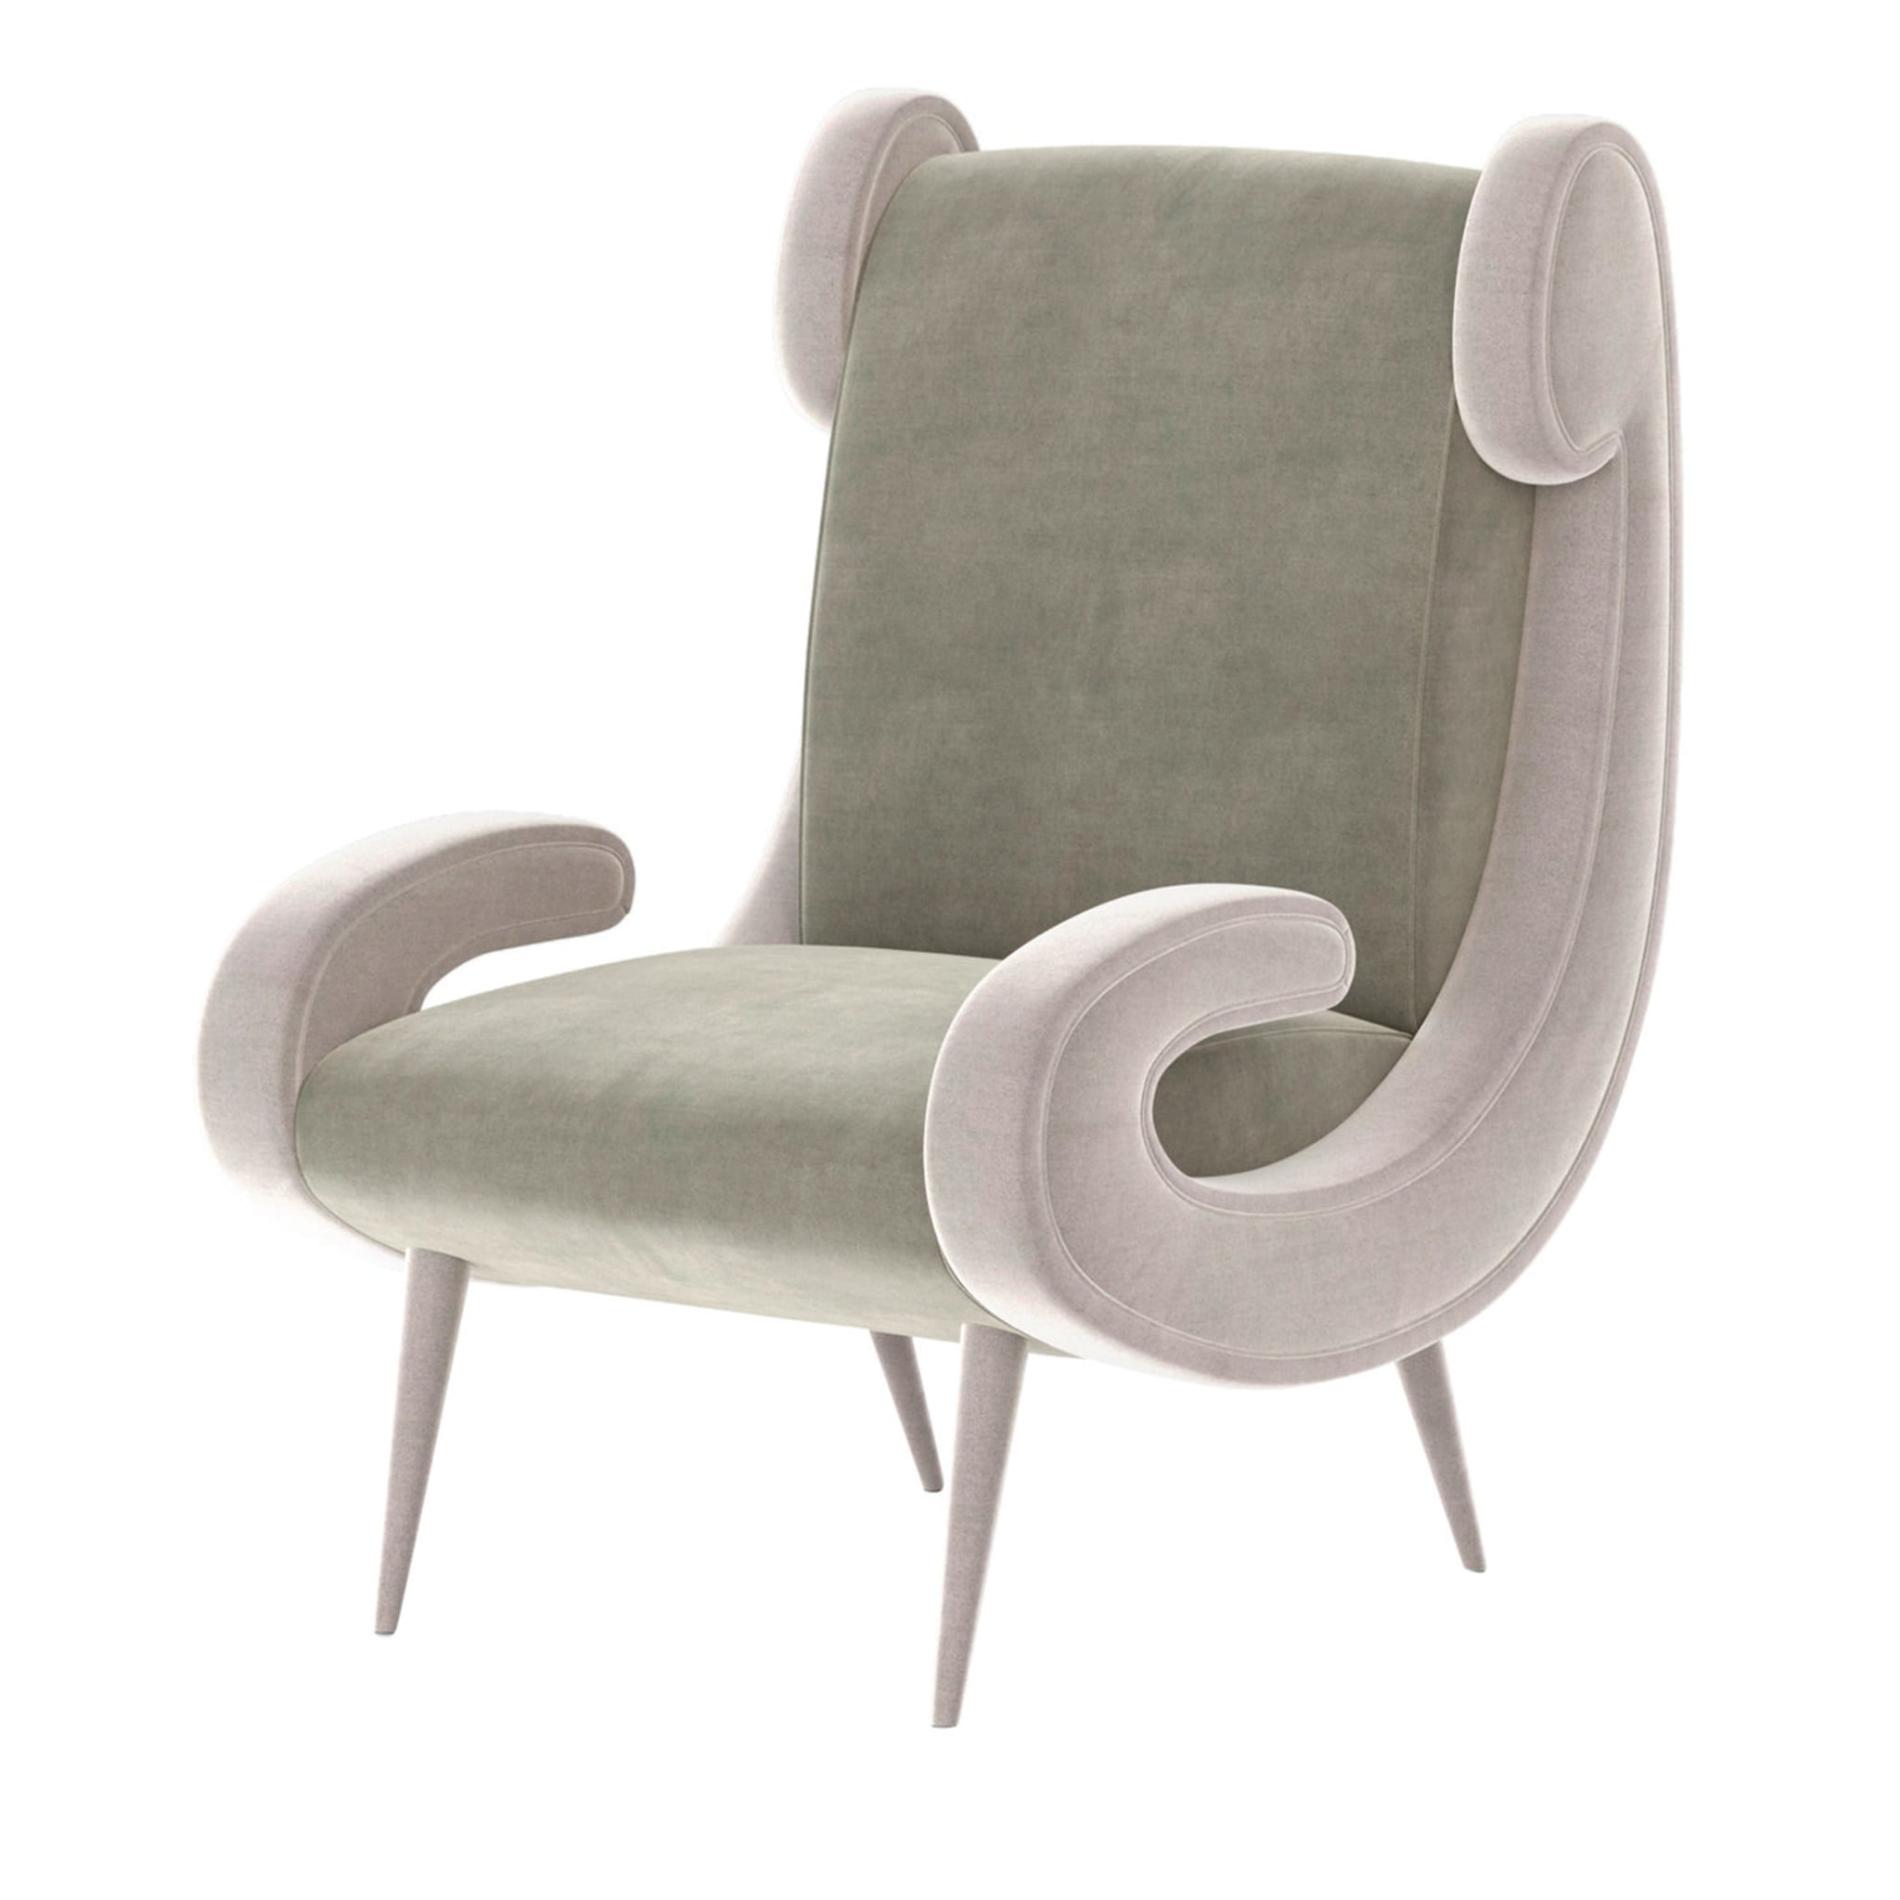 Laurel Opulent Armchair